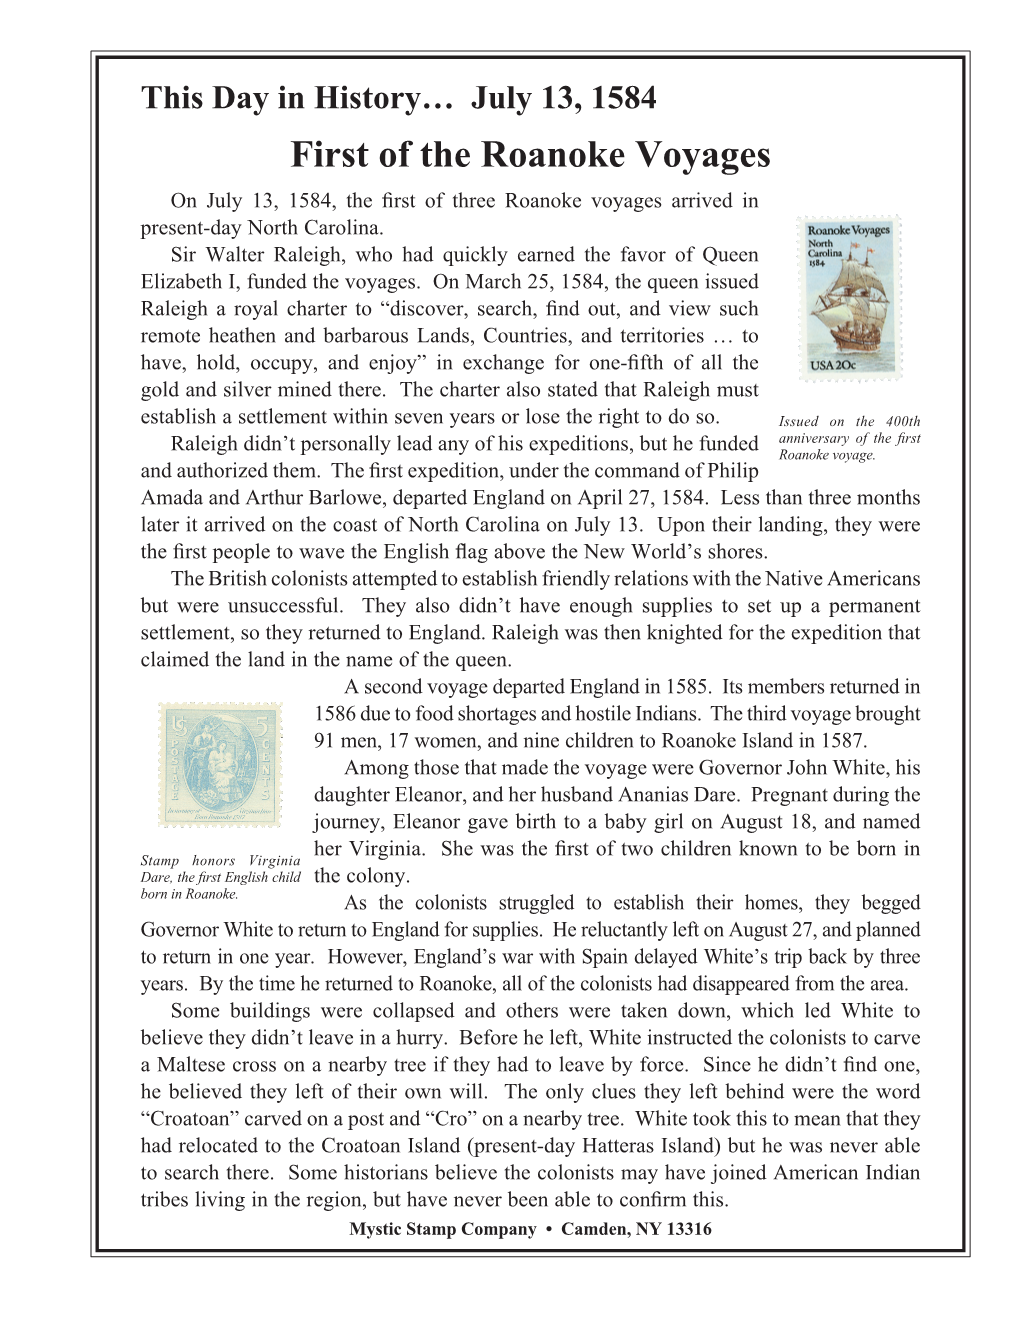 07-13-1584 Roanoke Voyages.Indd